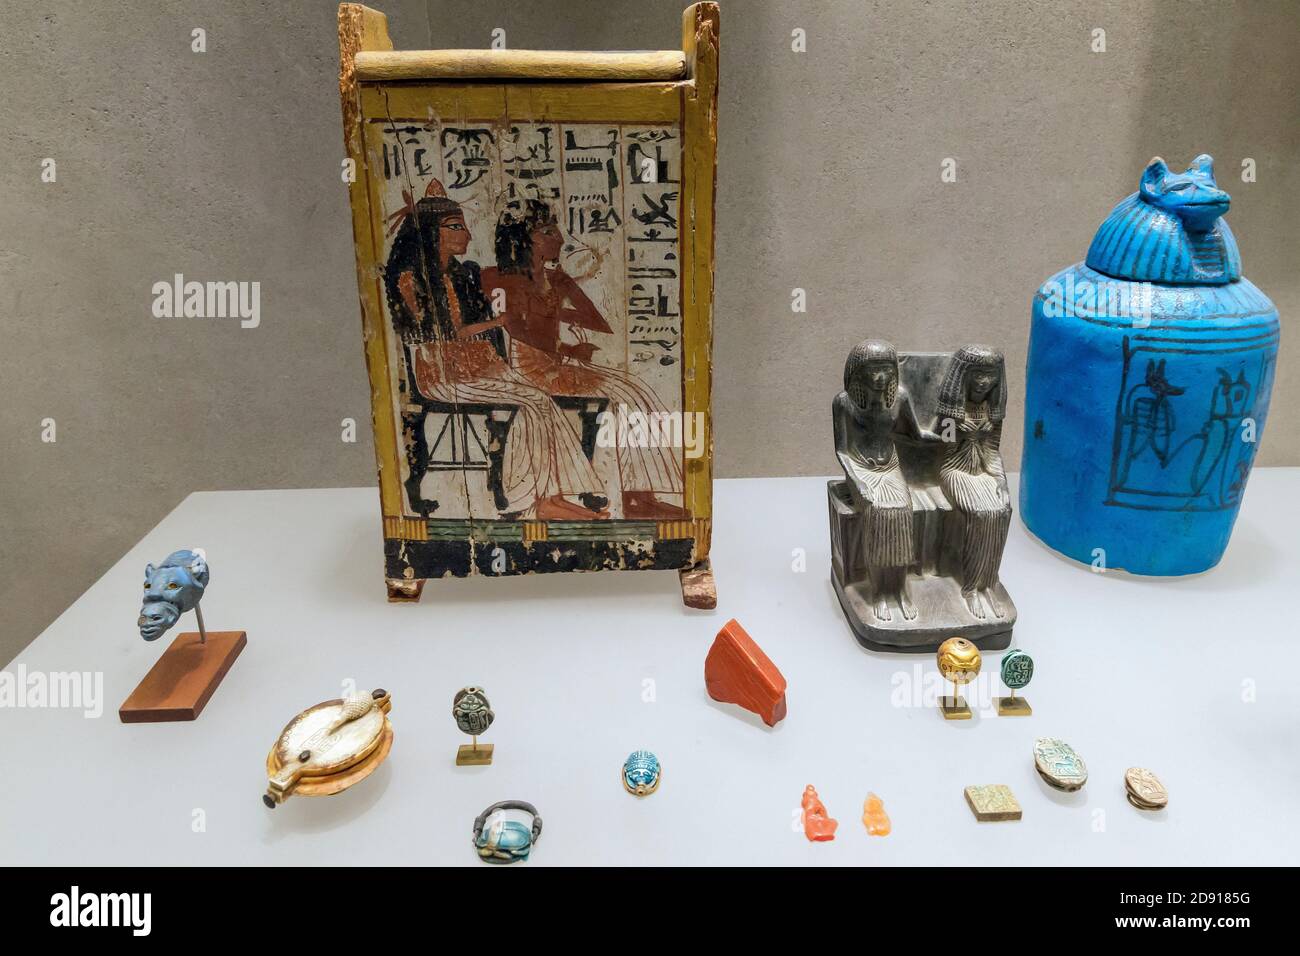 Les objets privés du début de l'époque Ramesside, culte funéraire, Metropolitan Museum of Art, Manhattan, New York City, USA, Amérique du Nord Banque D'Images